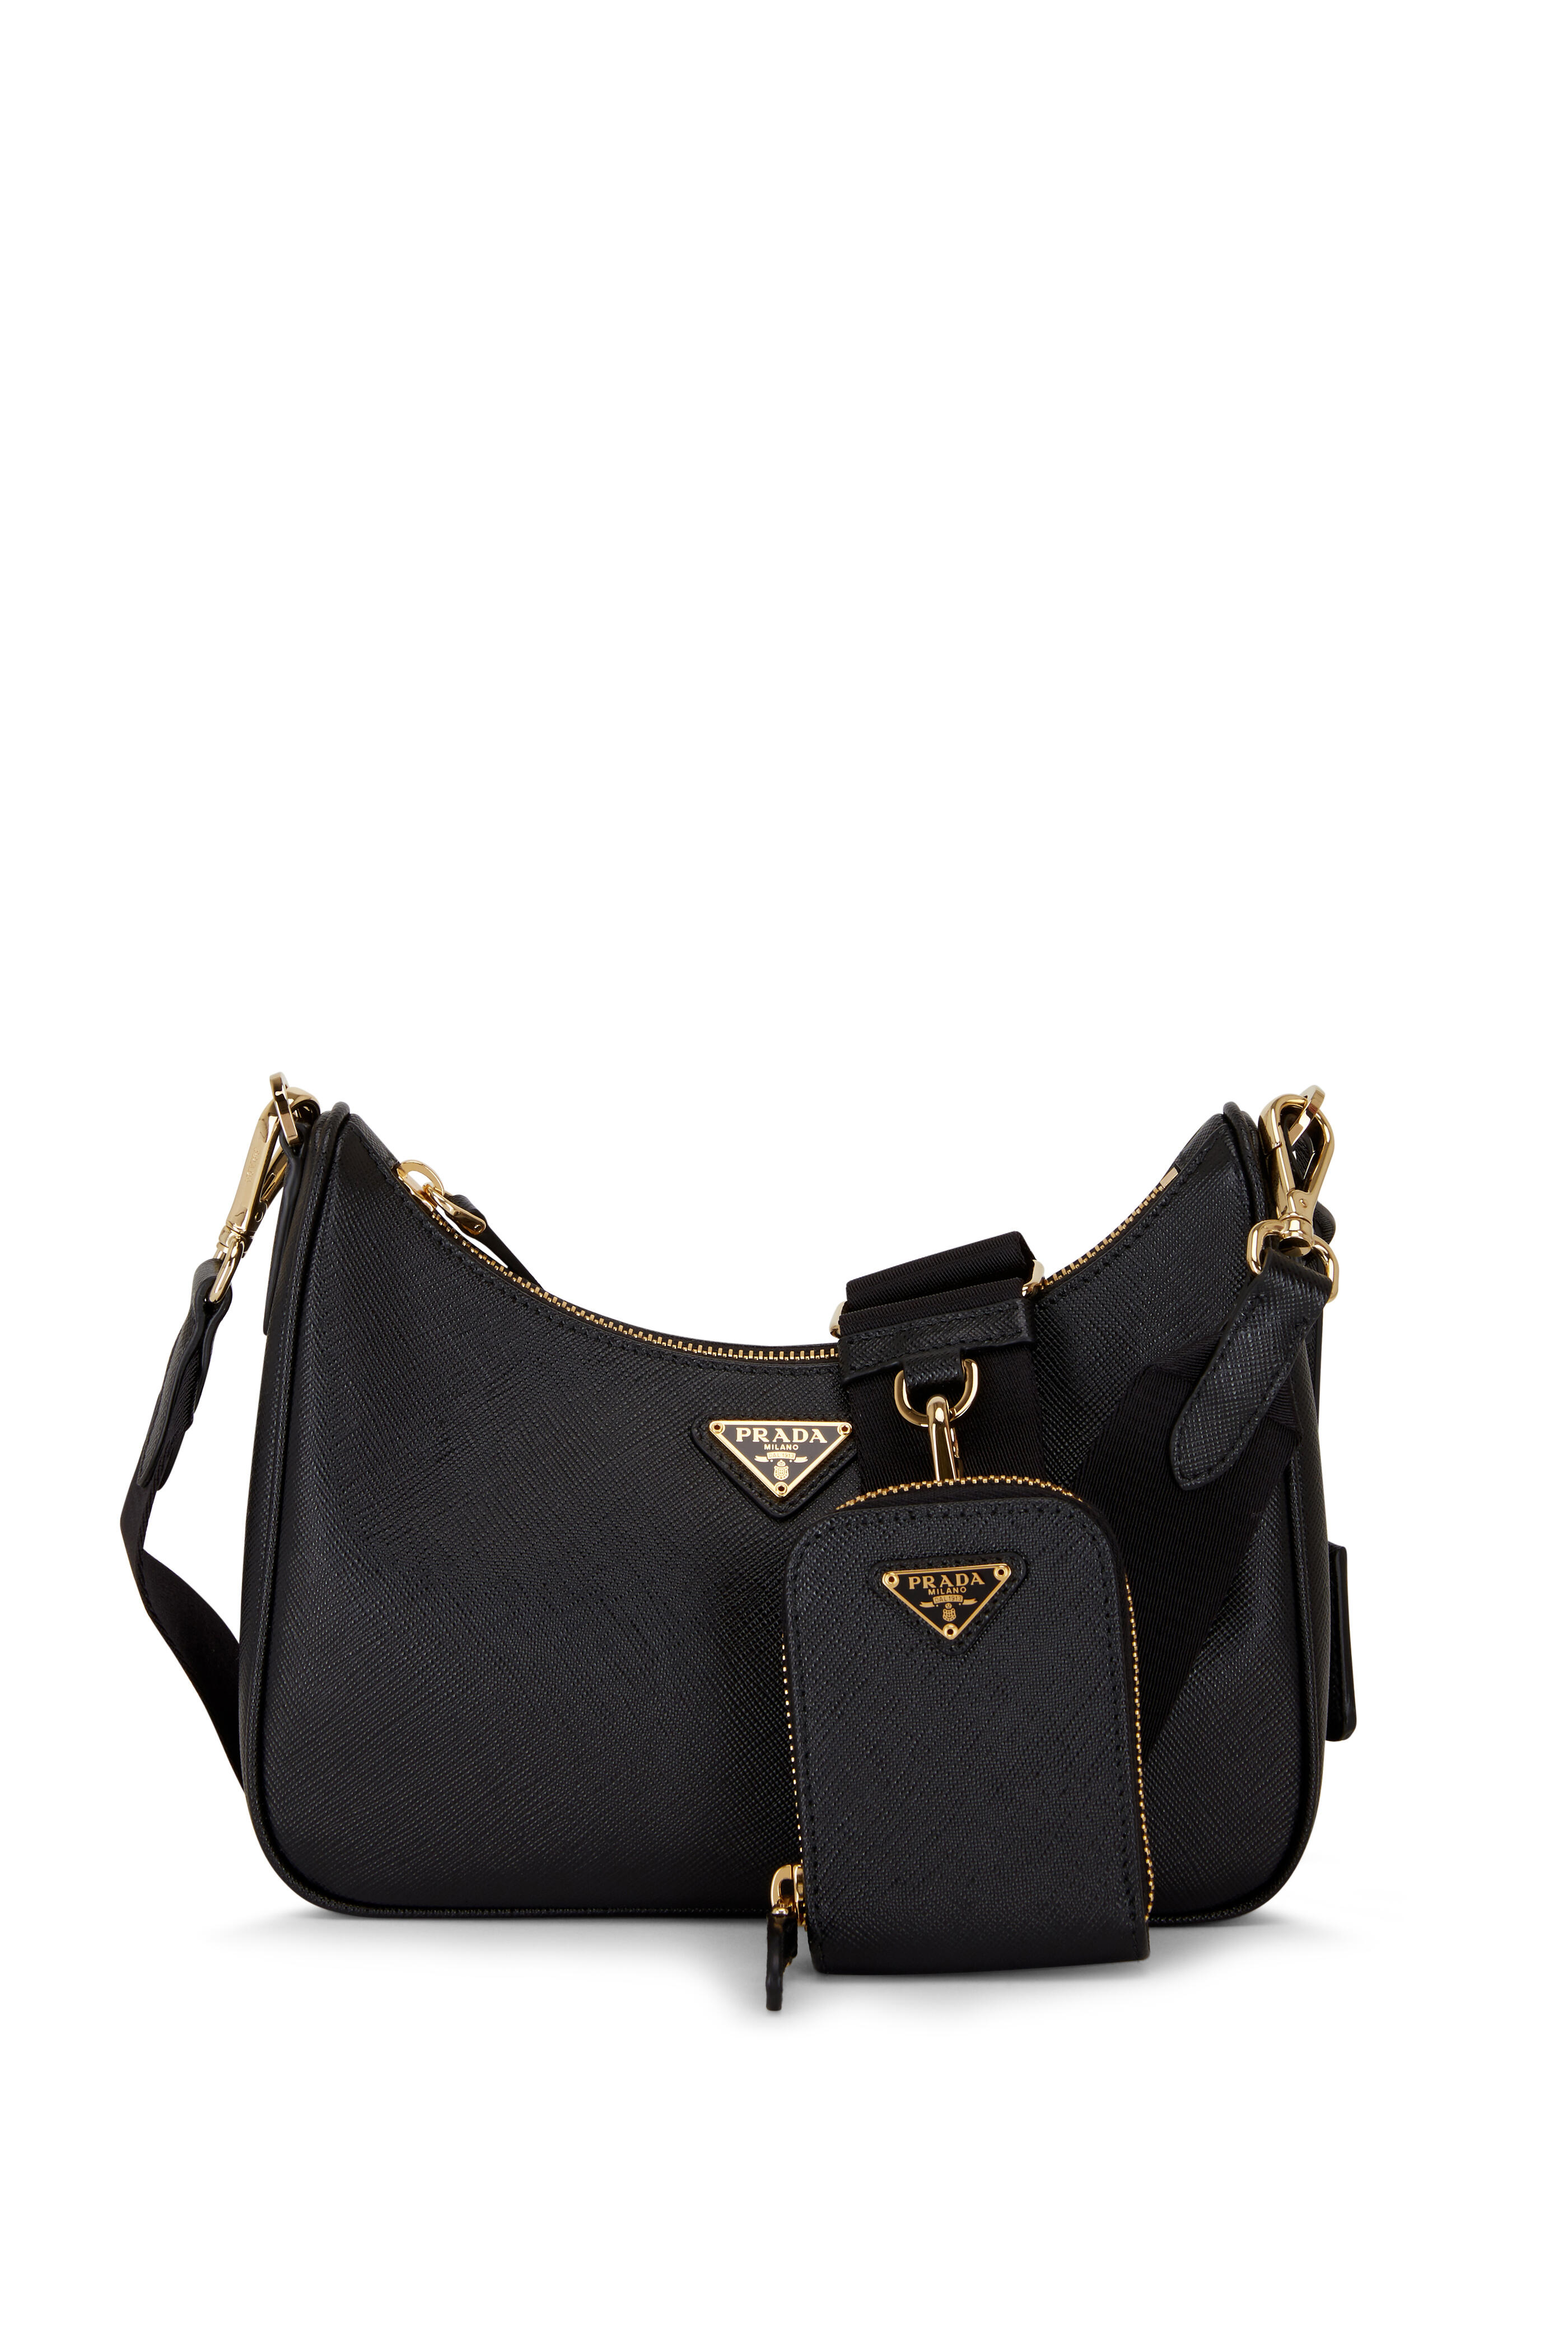 Prada Monochrome Saffiano Leather Bag in Black